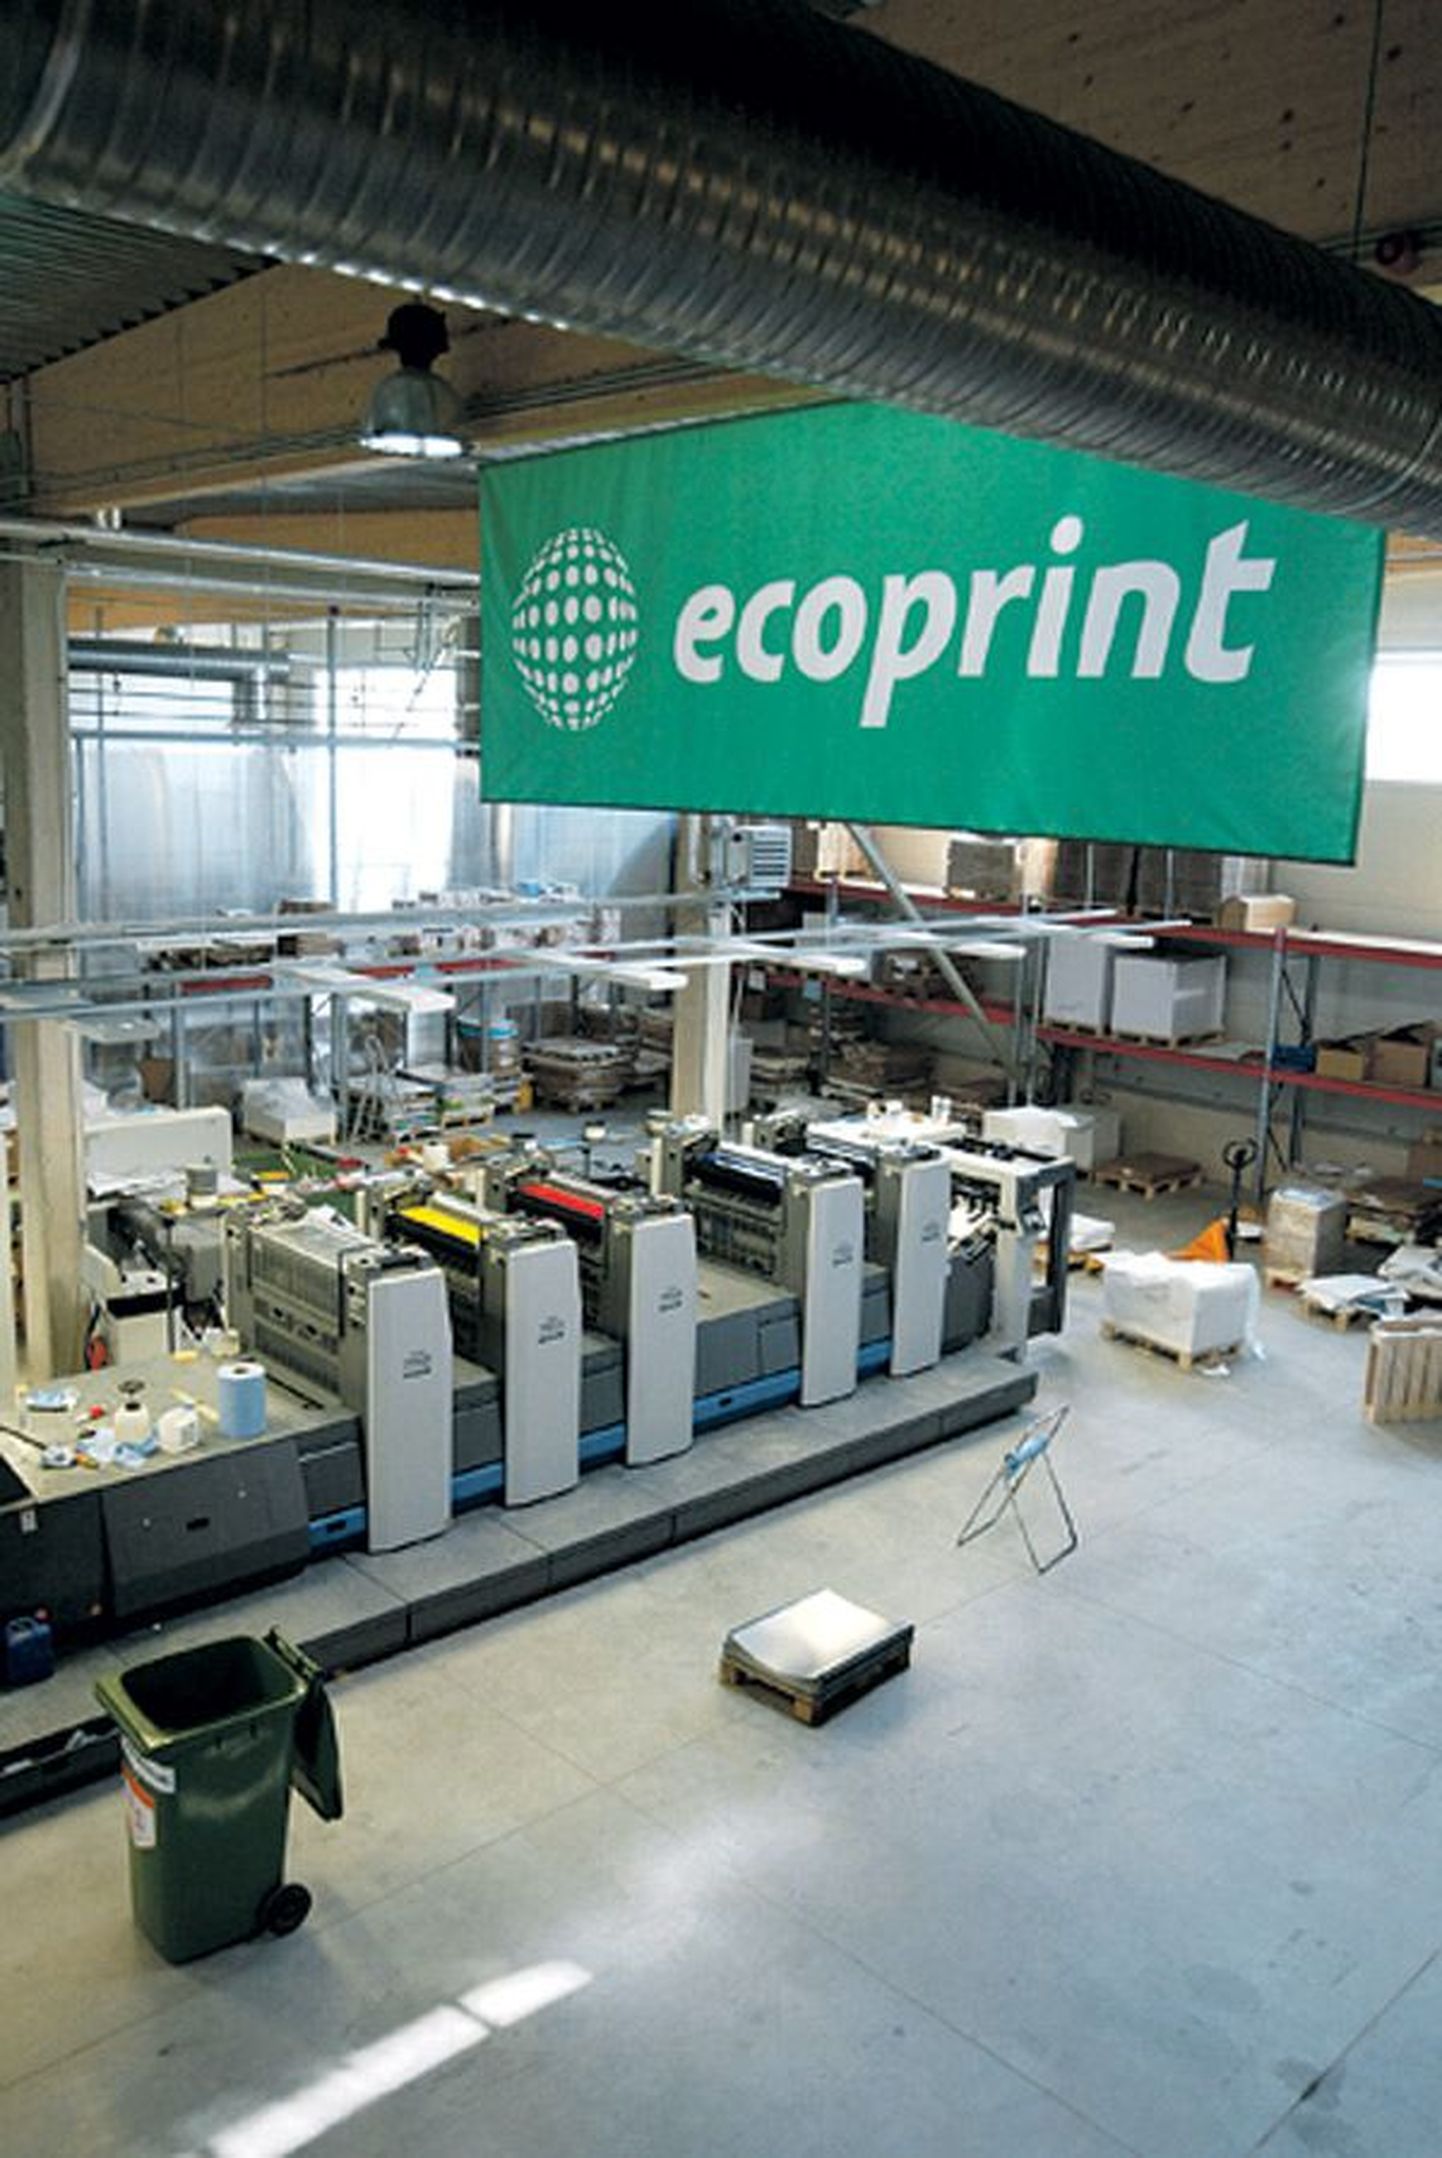 Rohelise trükiteenuse poolest tuntud Ecoprint kasutab näiteks ainult looduslikku trükivärvi.